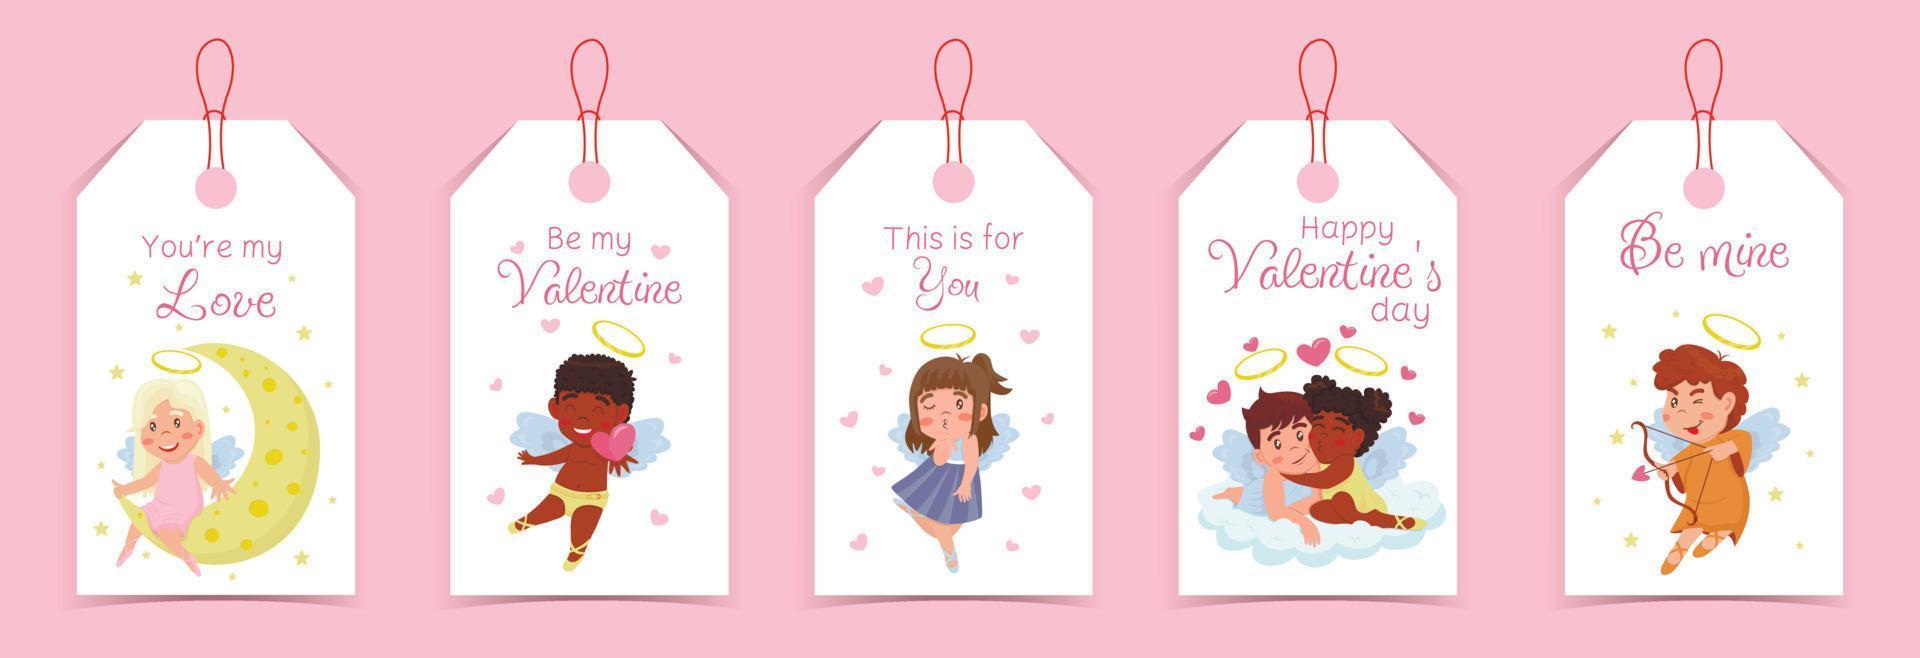 colección de etiquetas del día de san valentín con cupidos, ángeles infantiles y lindas letras aisladas en fondo blanco vector